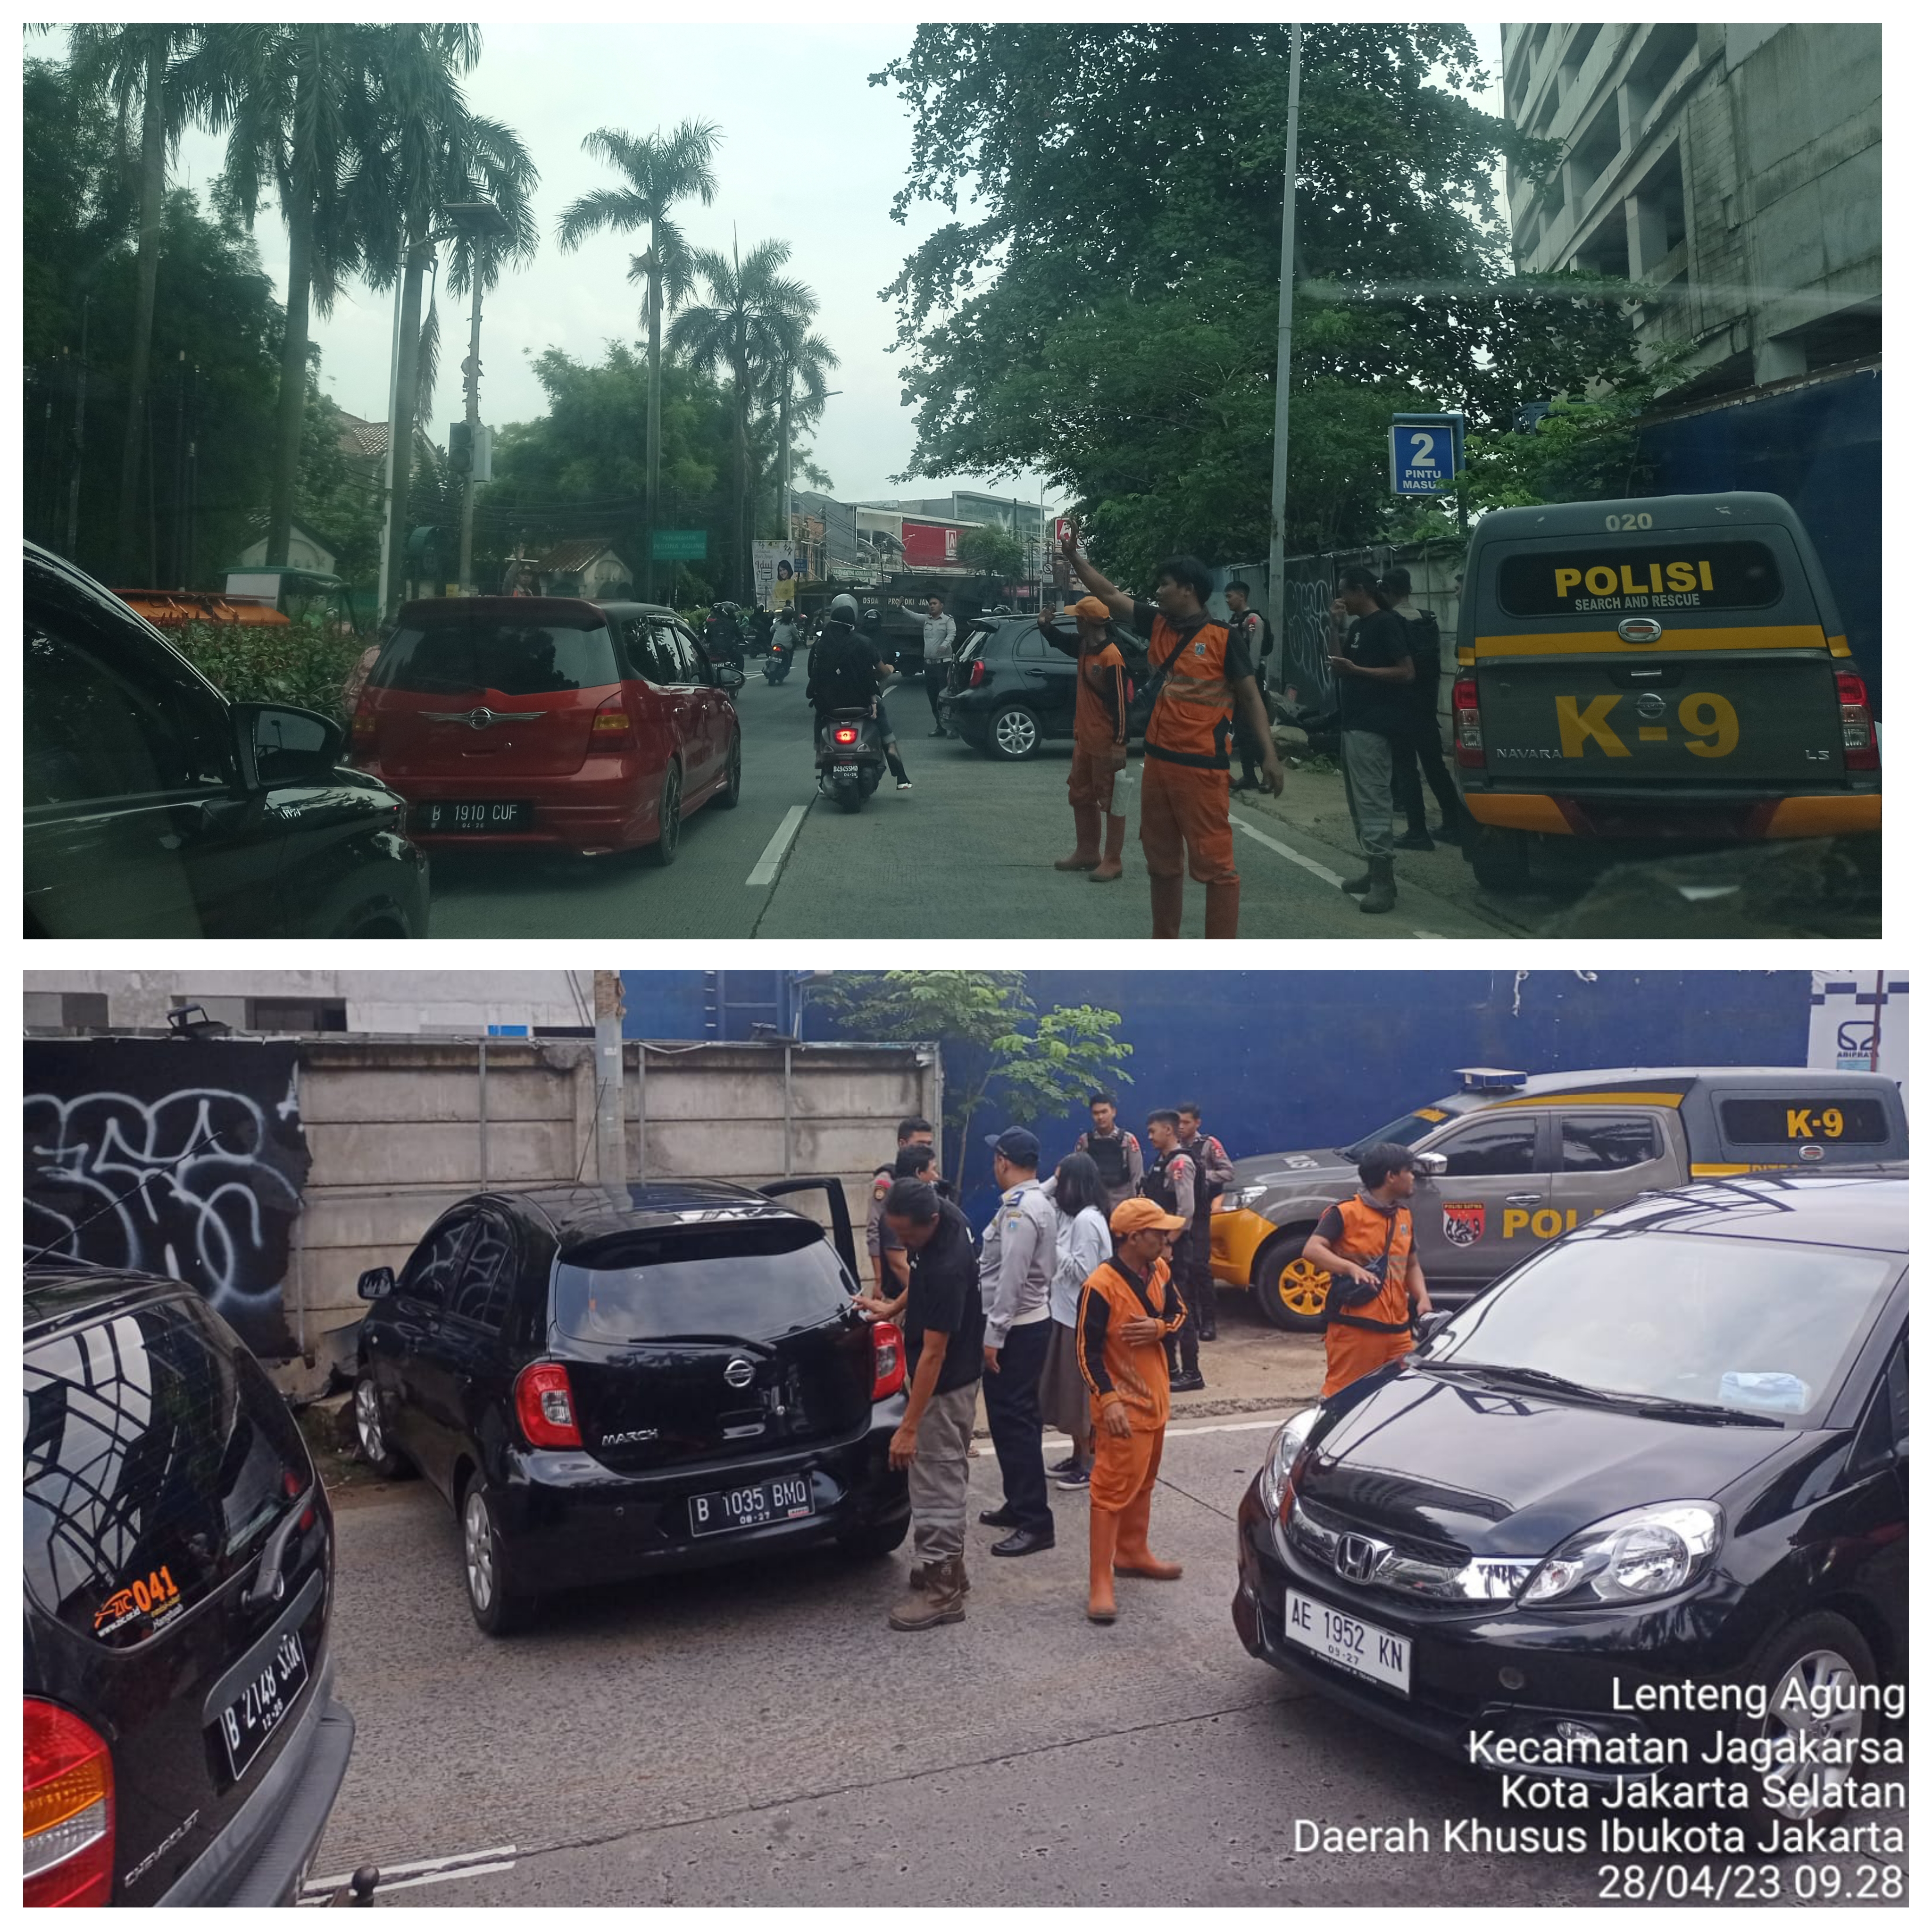 Kecelakaan Lalu lintas di Jl. Lenteng Agung Raya - Tj. Barat Wilayah Jagakarsa Jakarta Selatan